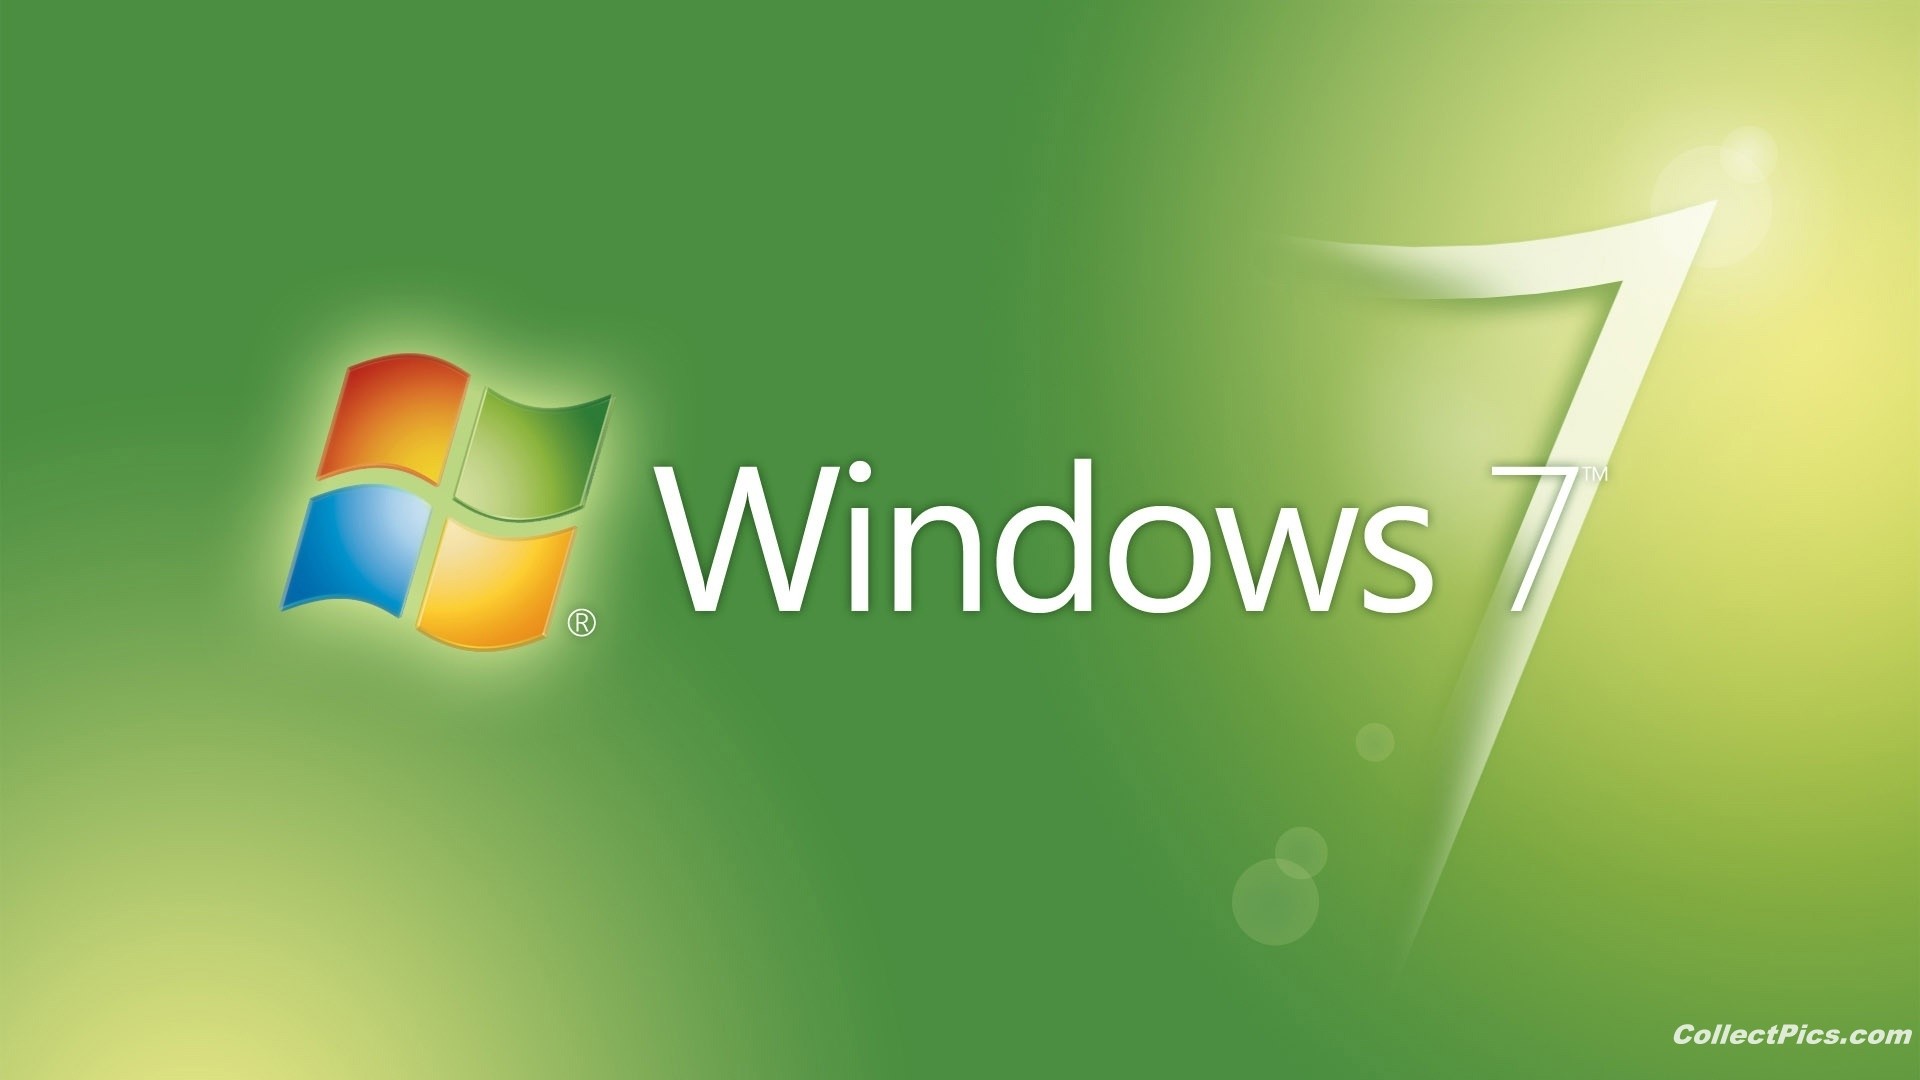 1920x1080 Windows 7 Green 1080p Wallpaper